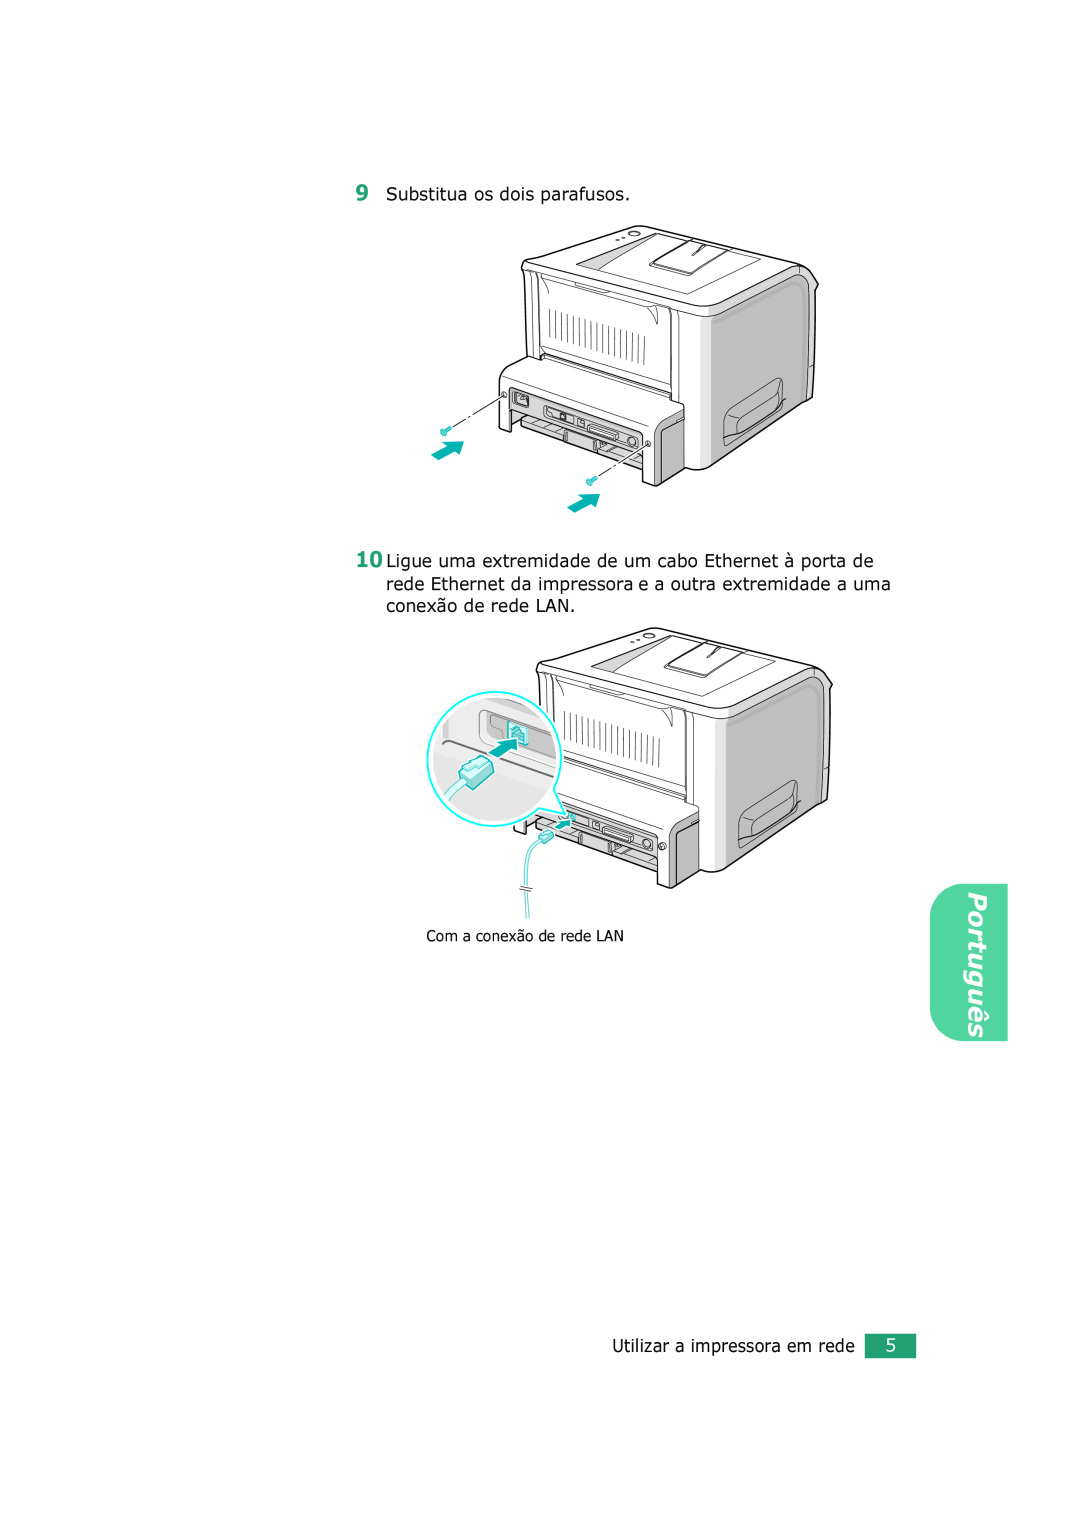 Xerox 3150 manual Substitua os dois parafusos, Com a conexão de rede LAN, Português, Utilizar a impressora em rede 